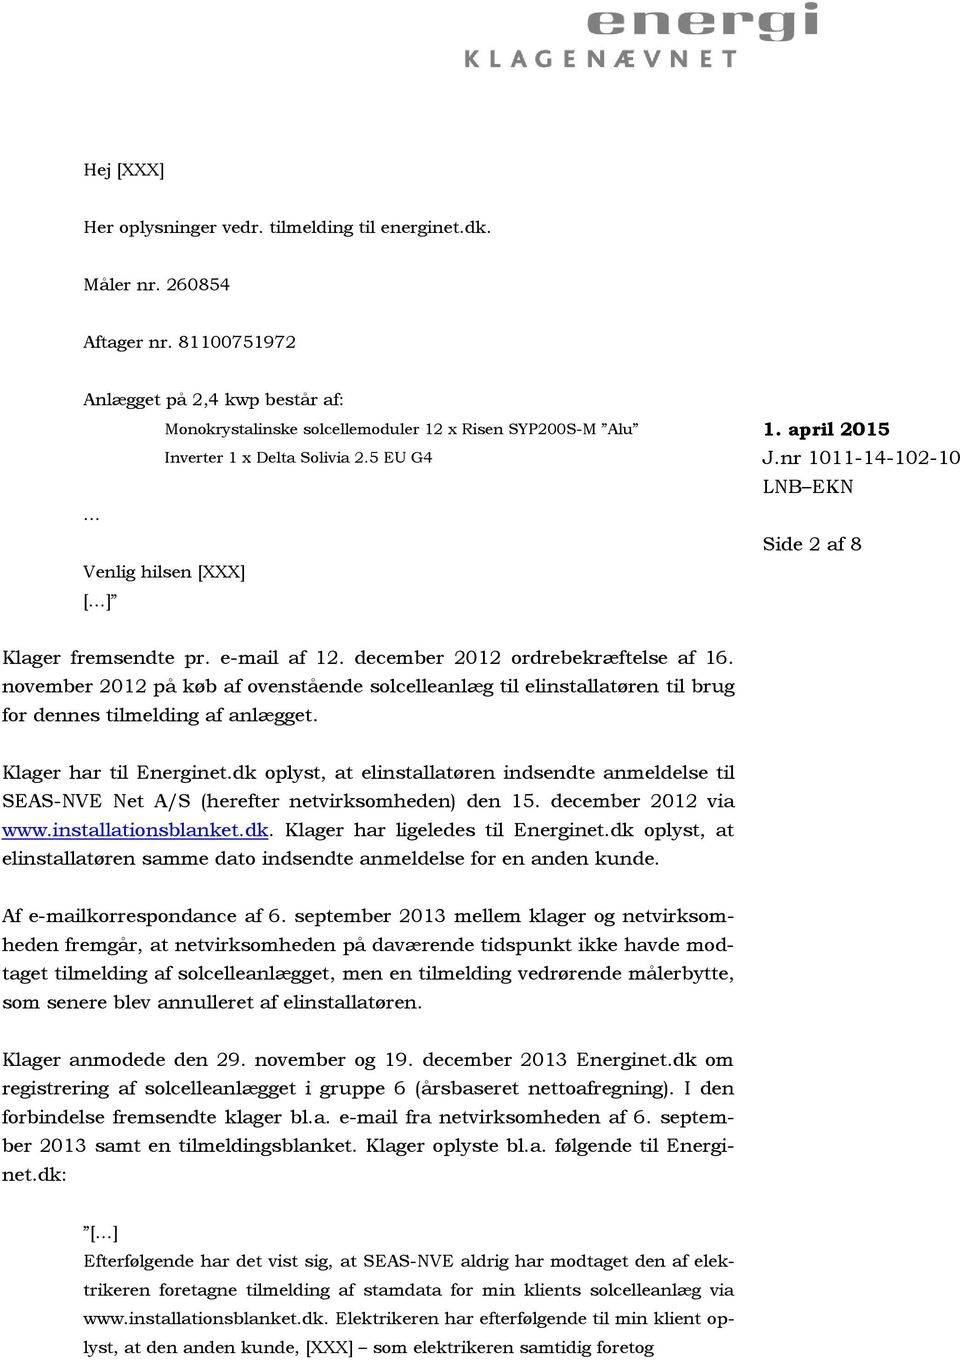 e-mail af 12. december 2012 ordrebekræftelse af 16. november 2012 på køb af ovenstående solcelleanlæg til elinstallatøren til brug for dennes tilmelding af anlægget. Klager har til Energinet.